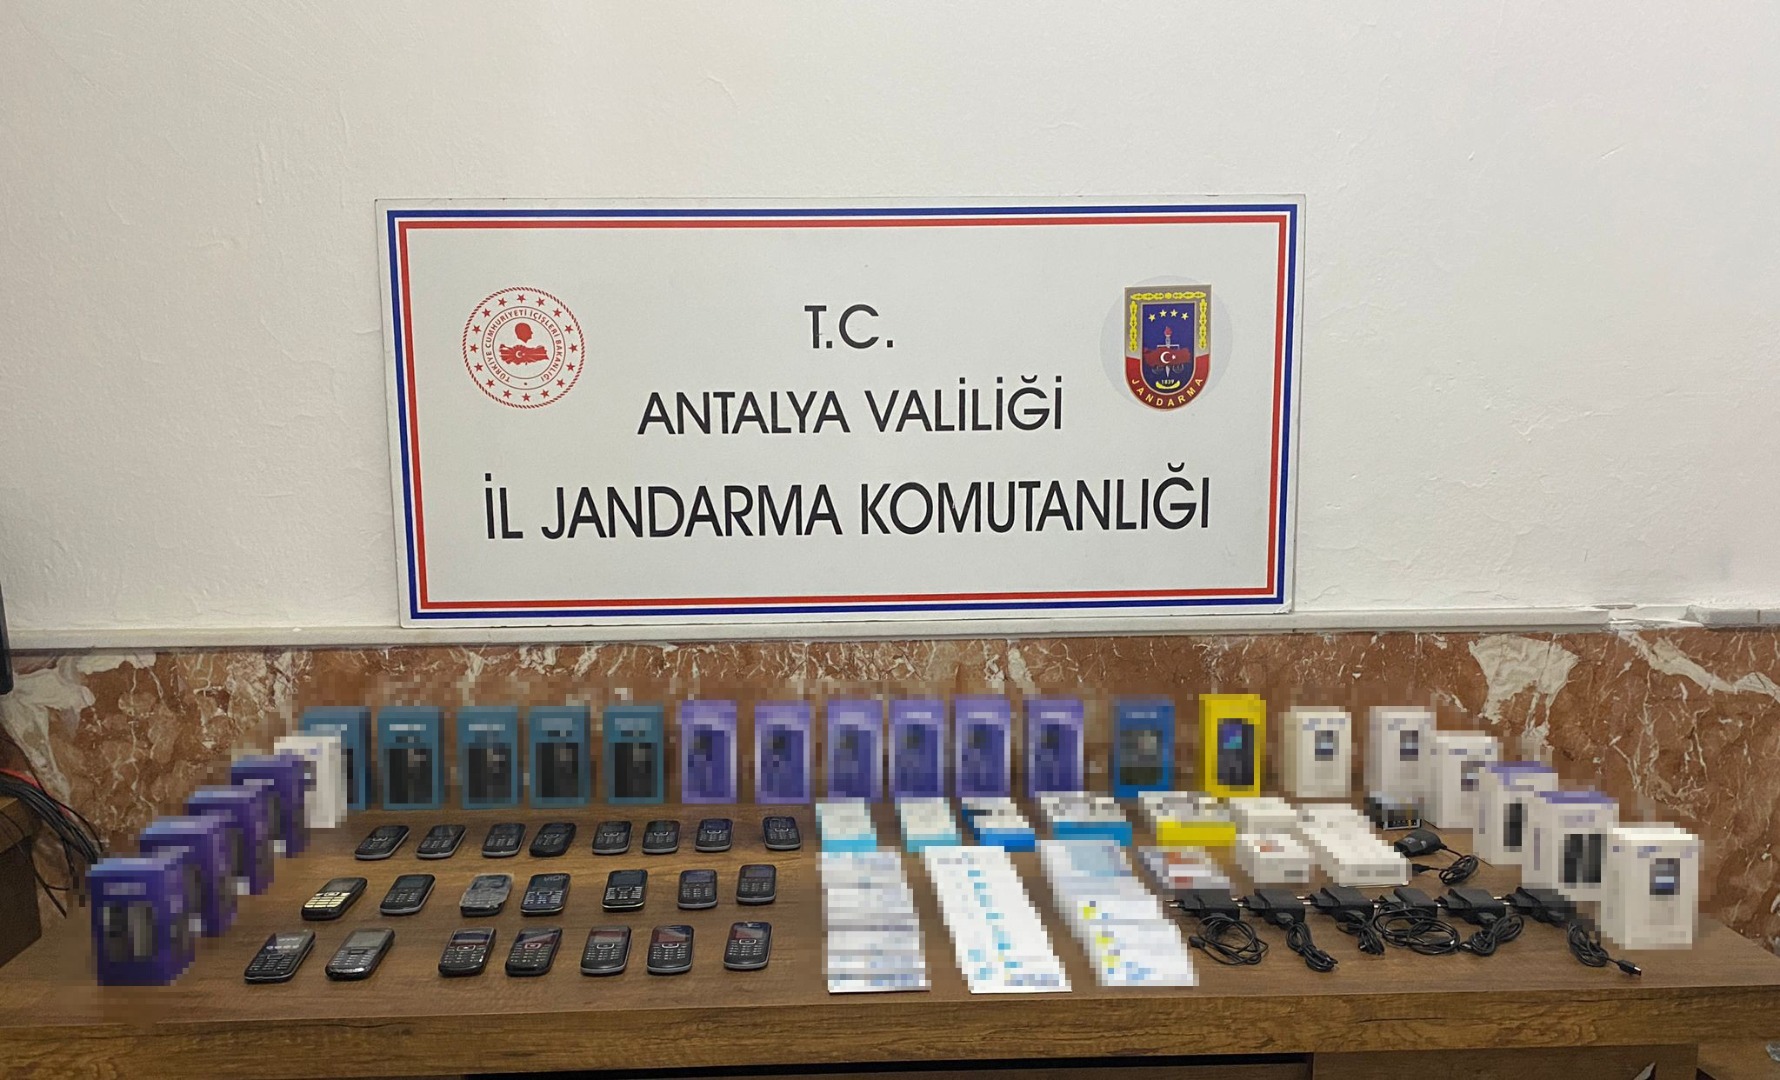 Antalya'da 46 adet kaçak cep telefonu ele geçirildi